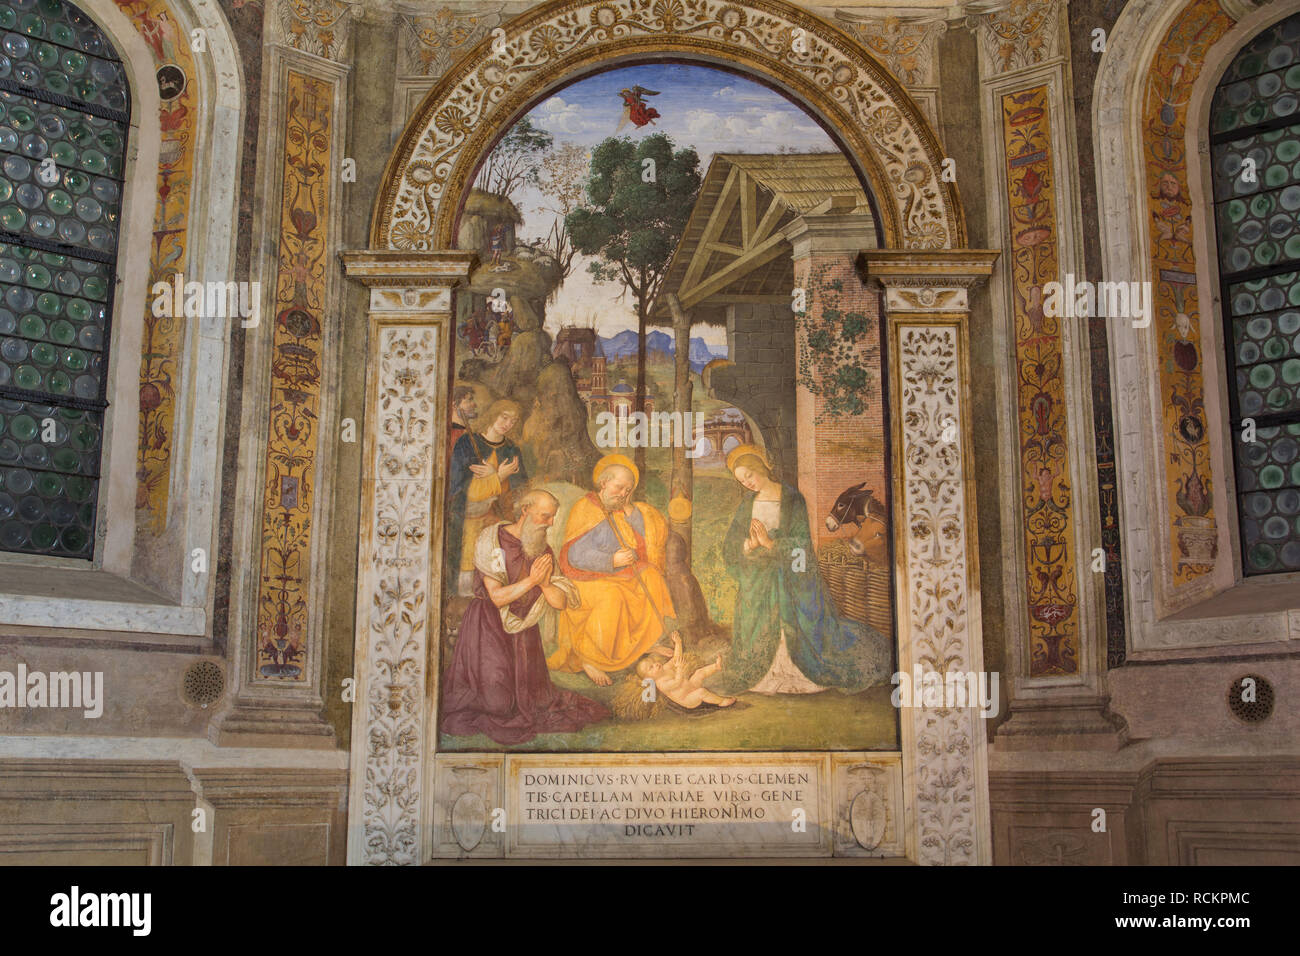 La adoración del Niño con San Jerónimo - Natividad (por Pinturicchio, 1490) - Della Rovere, de la capilla de Santa Maria del Popolo - Roma Foto de stock